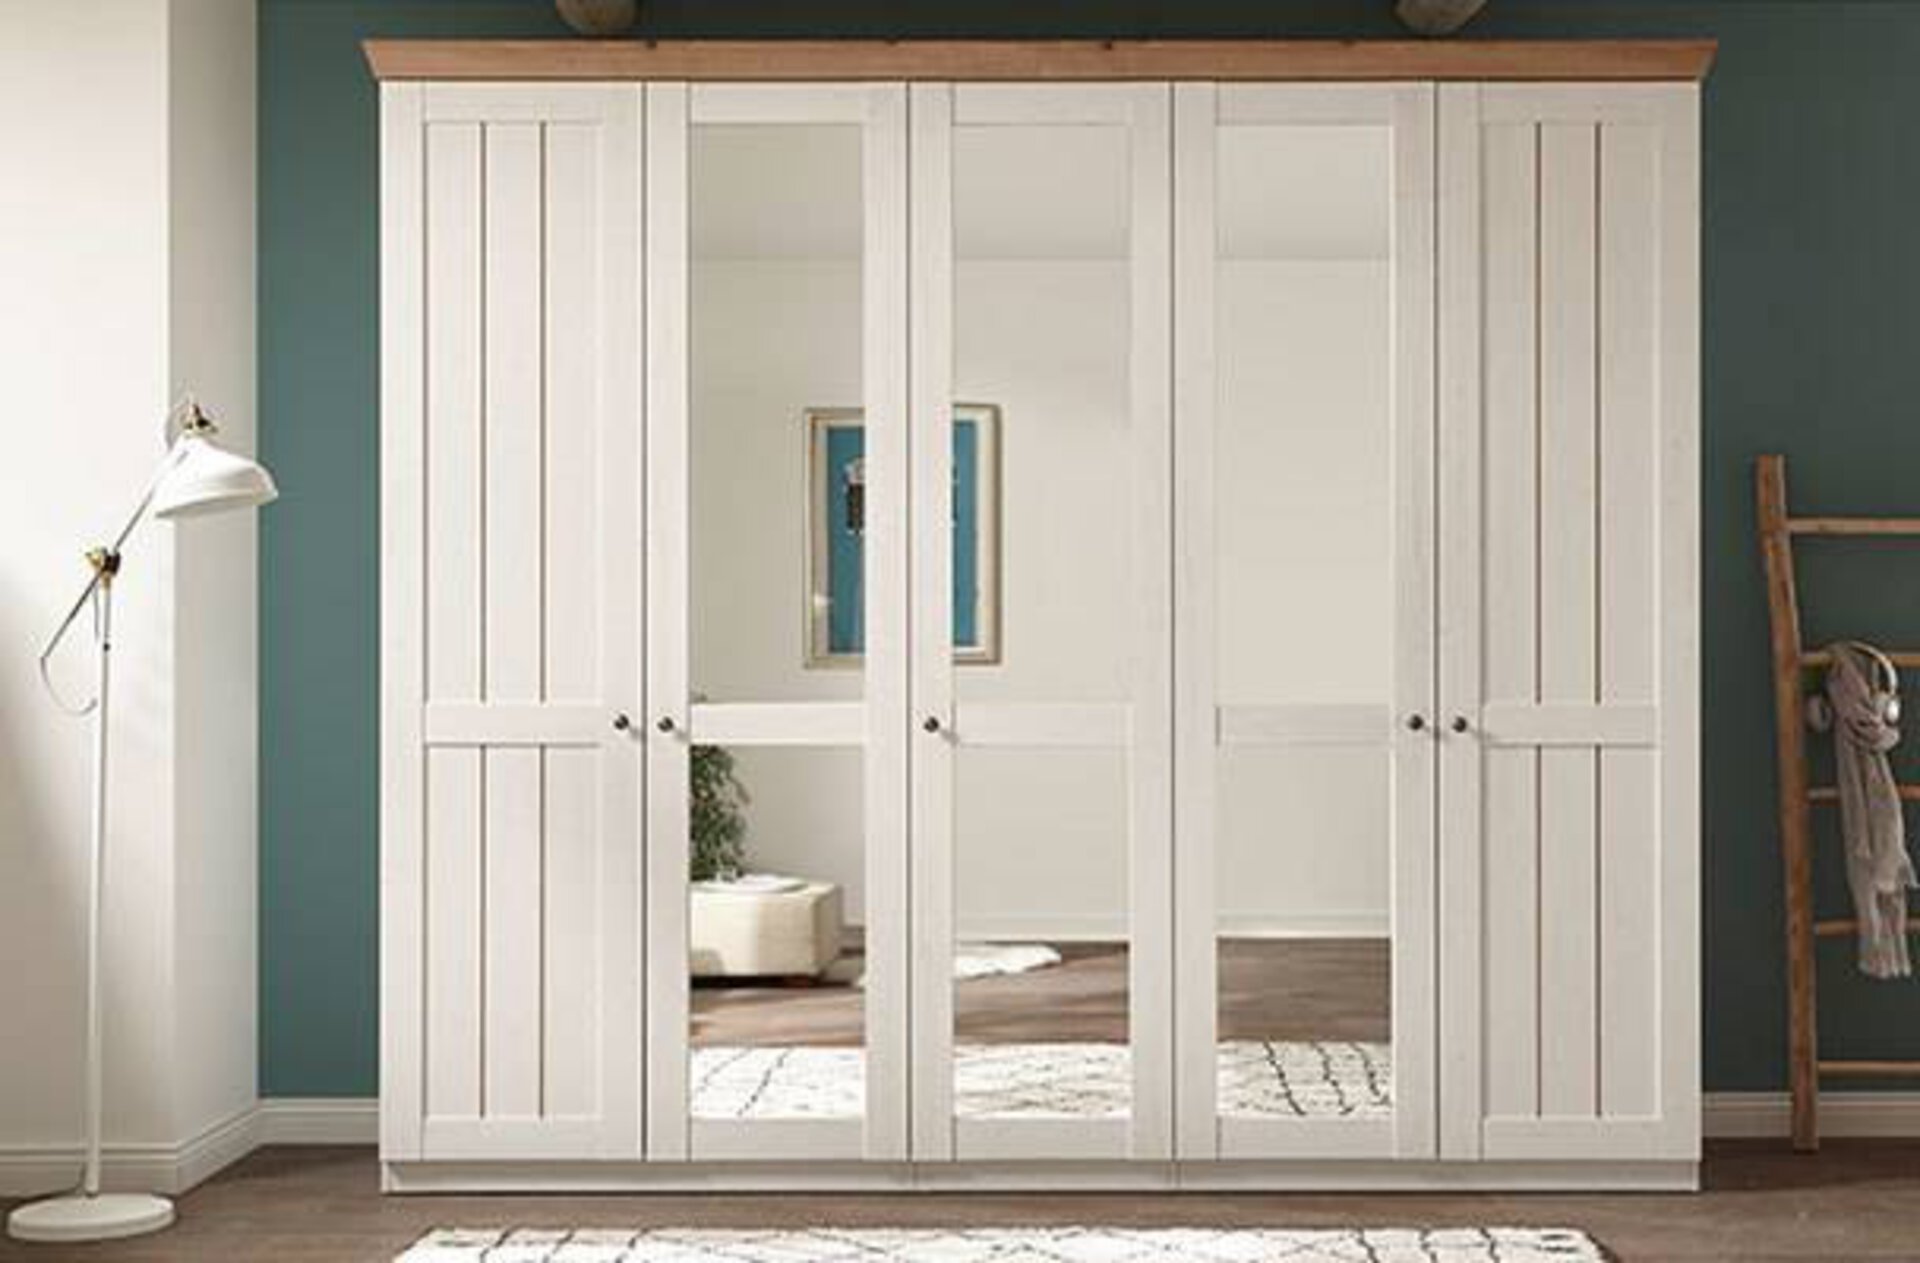 Weißer Kleiderschrank im Landhausstil mit 5 Drehtüren. Die drei mittleren Türen sind mit Spiegel versehen.